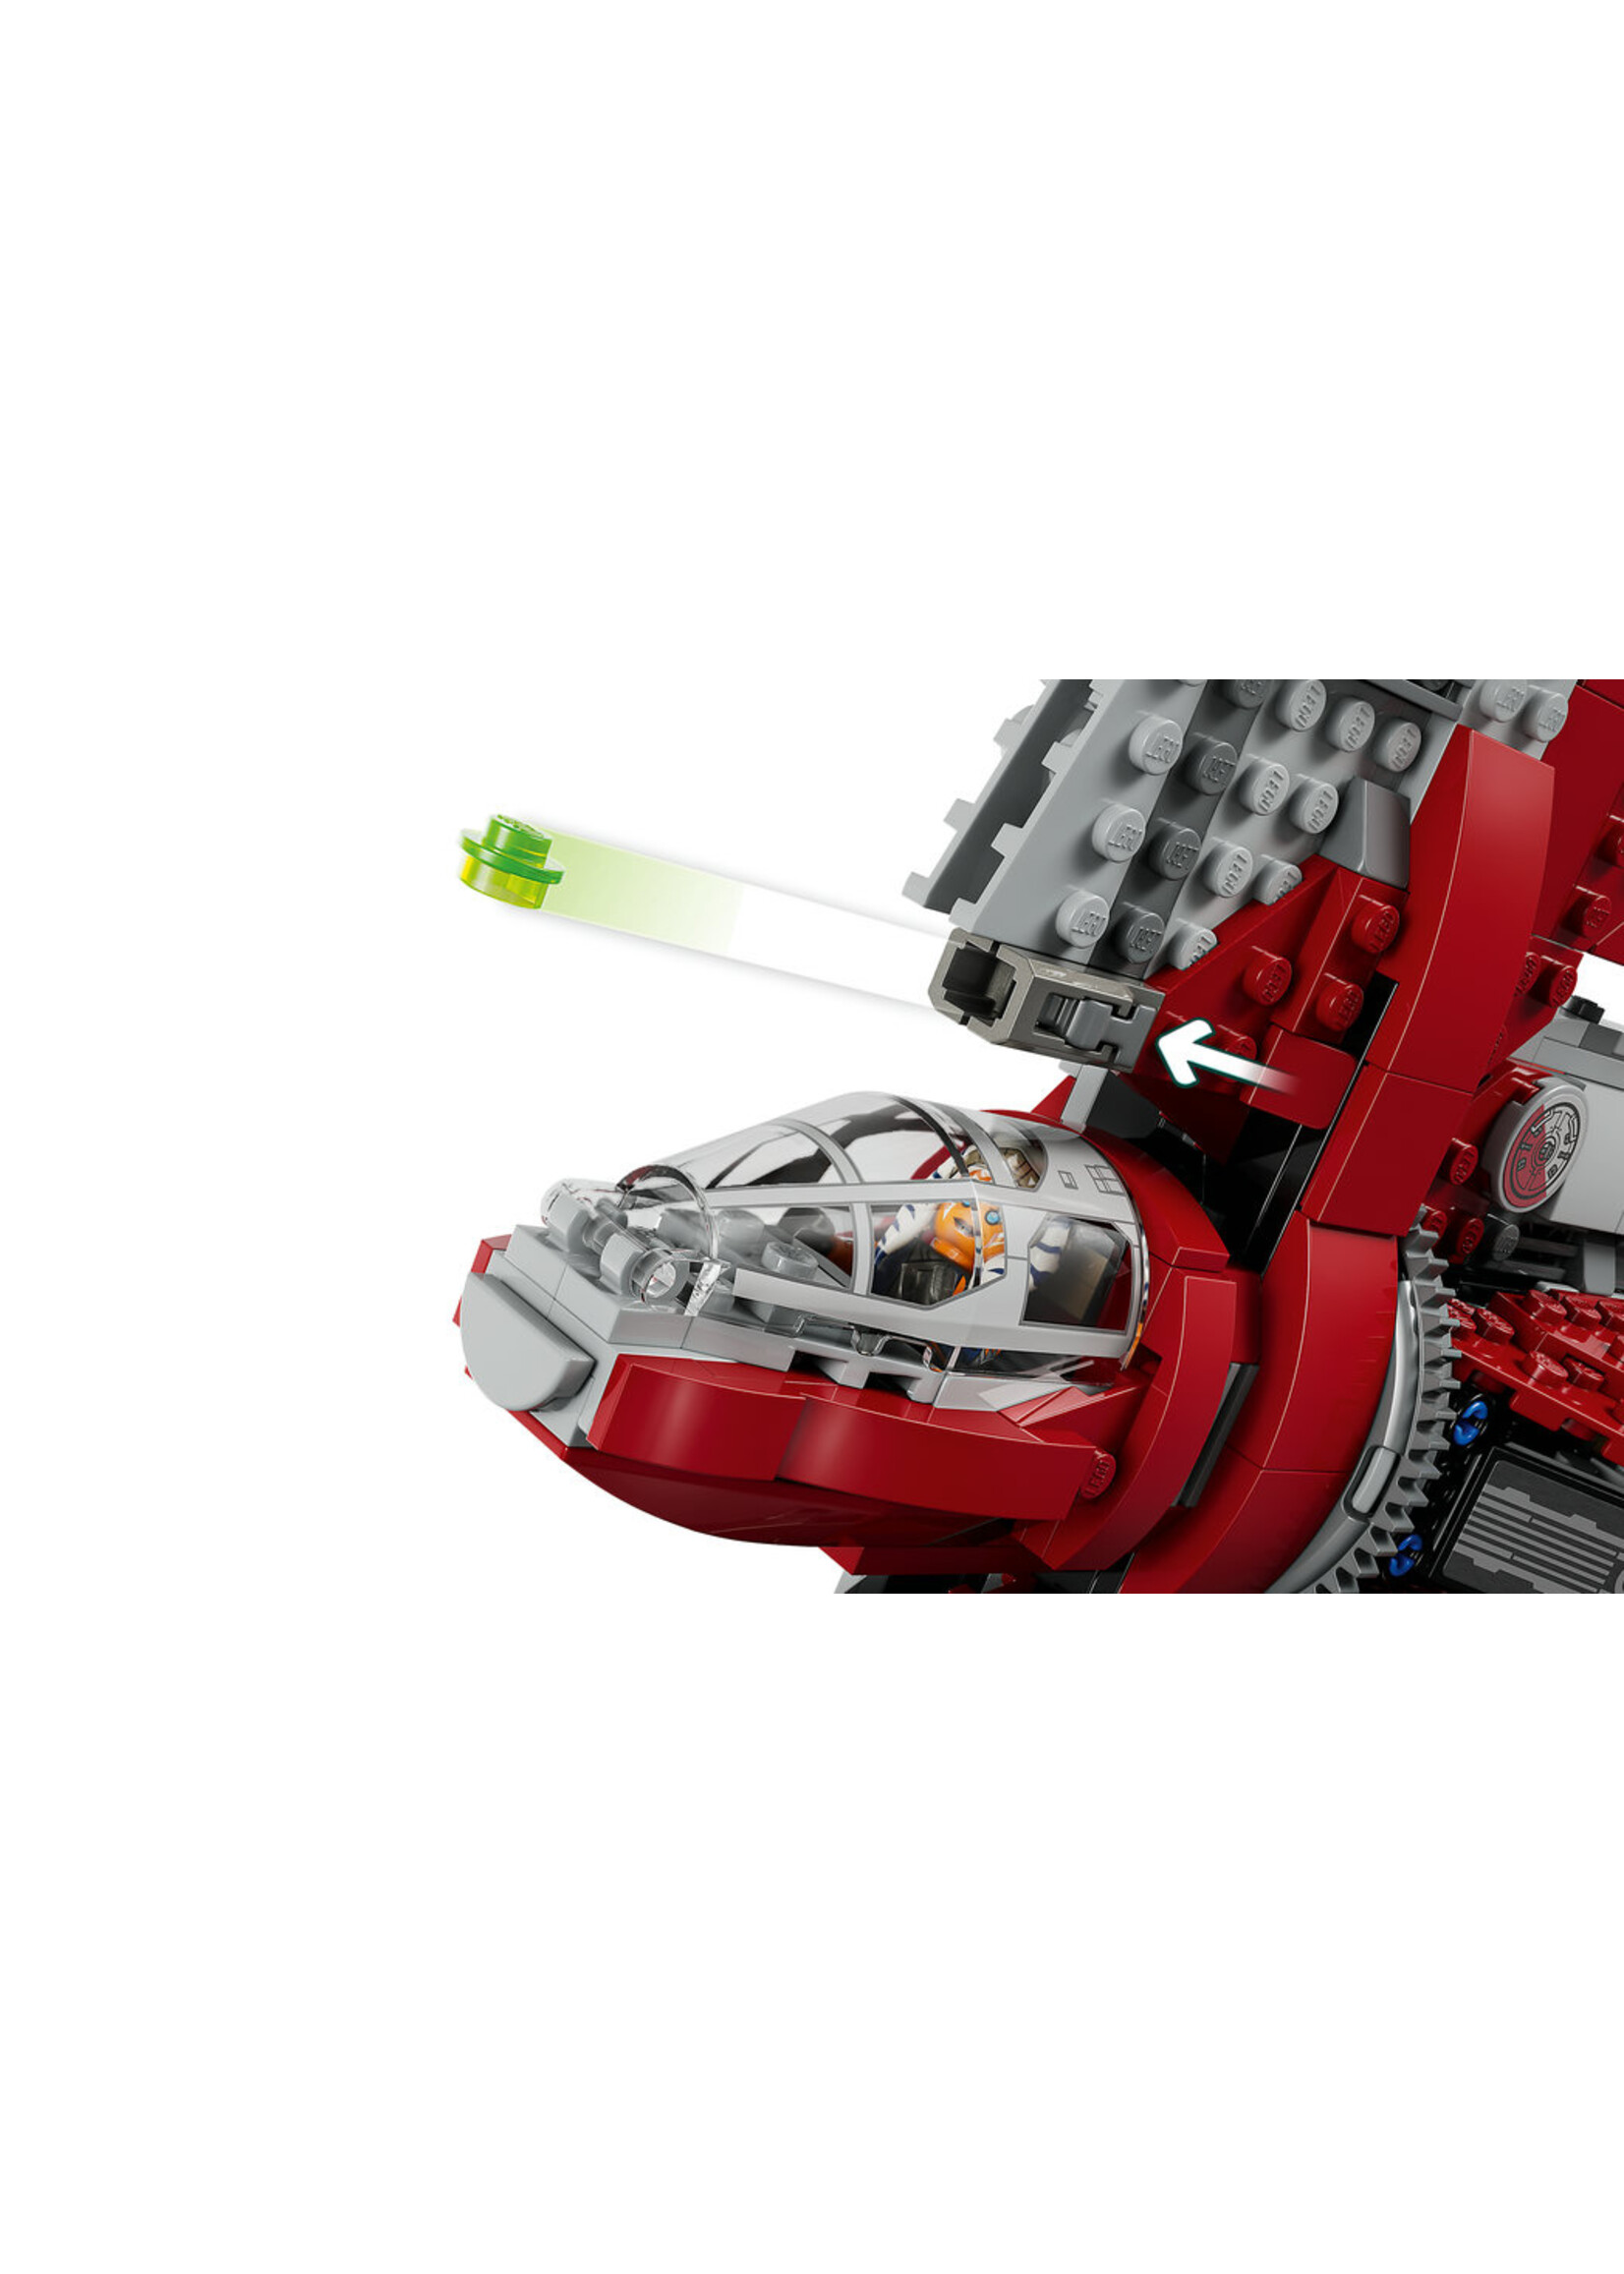 LEGO STAR WARS 75362 T-6 Jedi Shuttle Ahsoka Tano Sabine Marrok